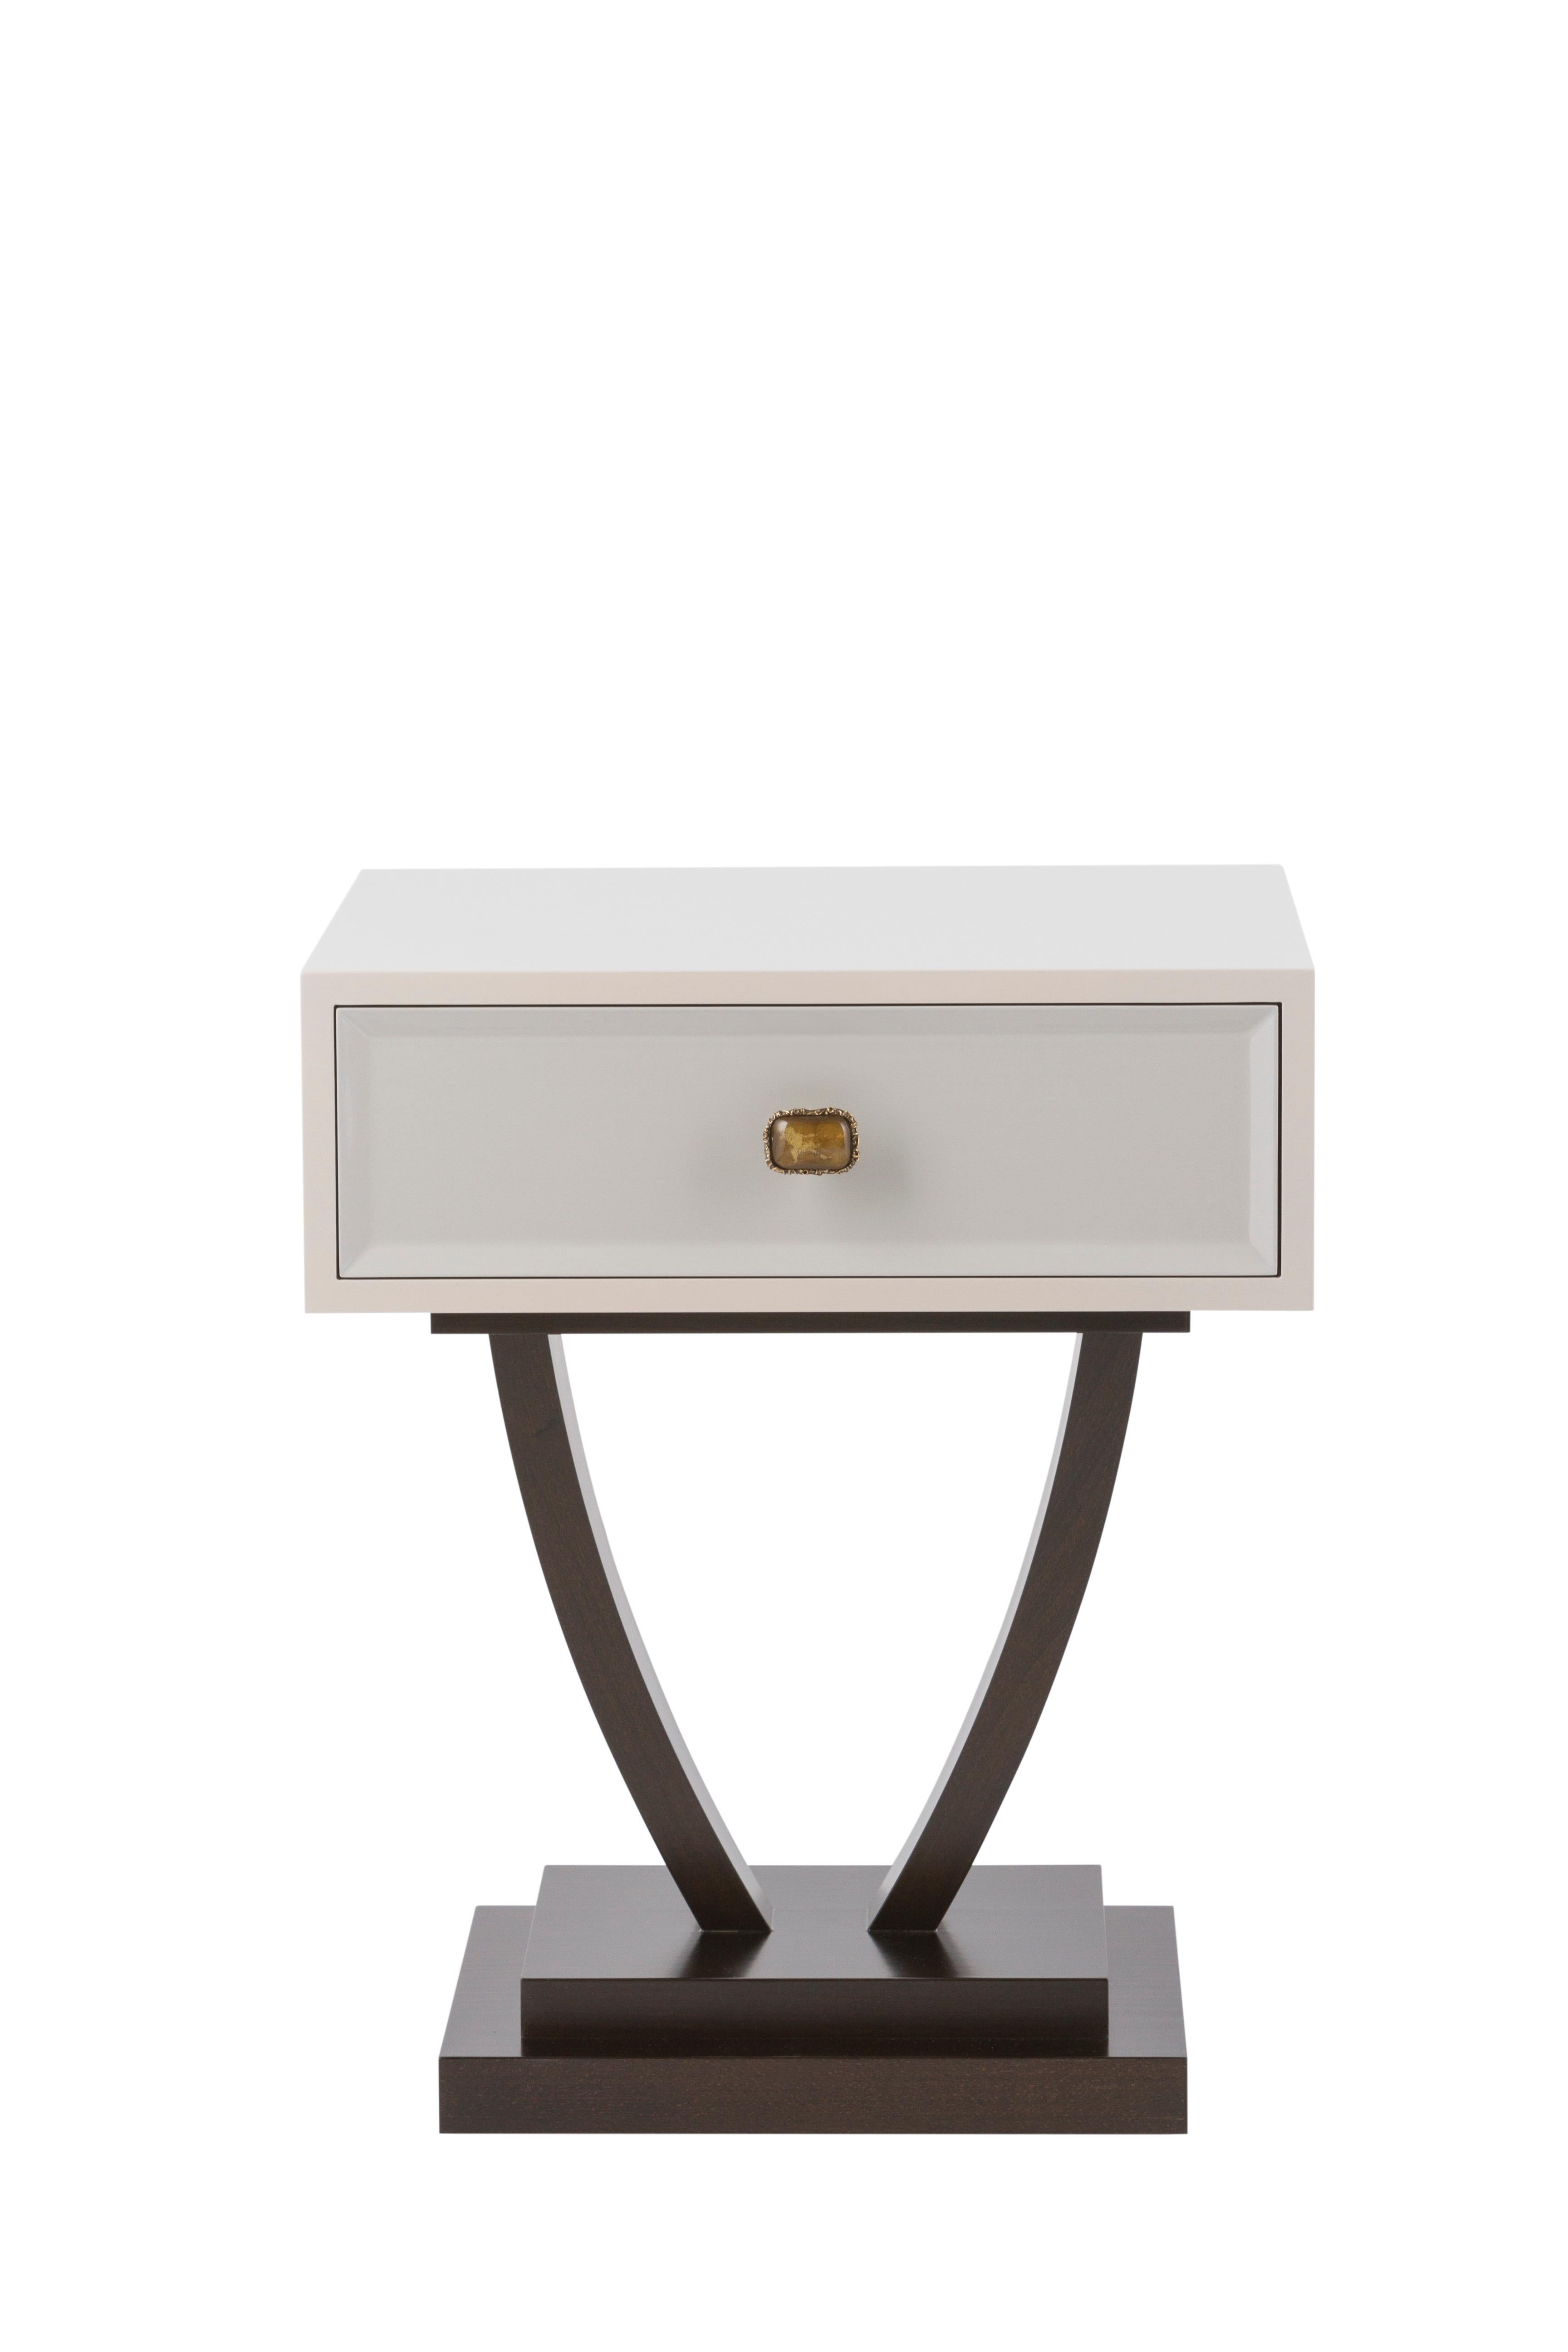 Bett Nachttisch, Modern Collection'S, handgefertigt in Portugal - Europa von GF Modern.

Der Nachttisch Bett bietet ein zeitloses Design für Ihren Wohnbereich. Bett ist ein Nachttisch aus Holz mit einer in Beige und Hellgrau lackierten Schublade und